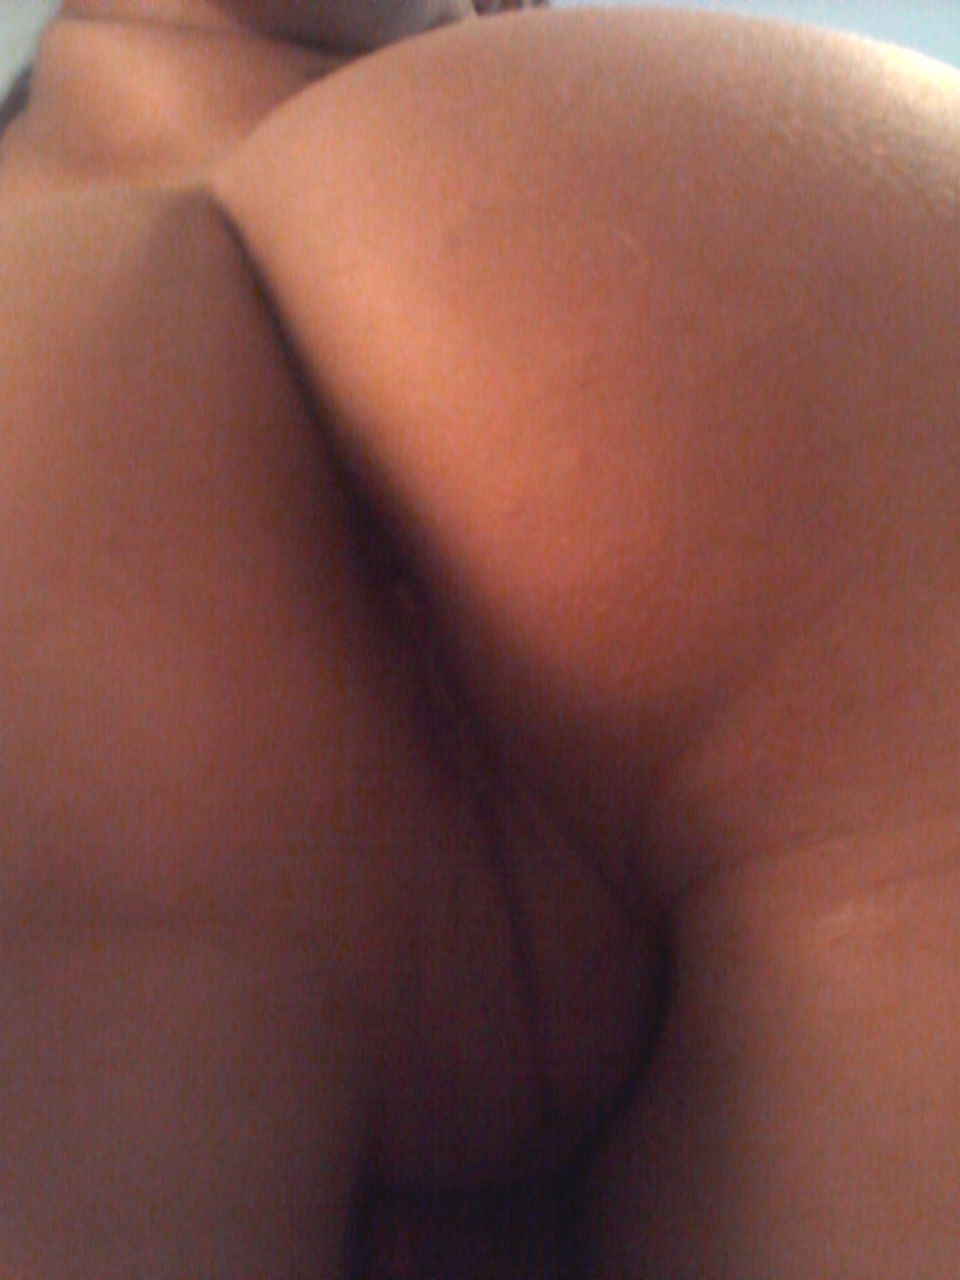 Pussy Photos Closeup Image 67845